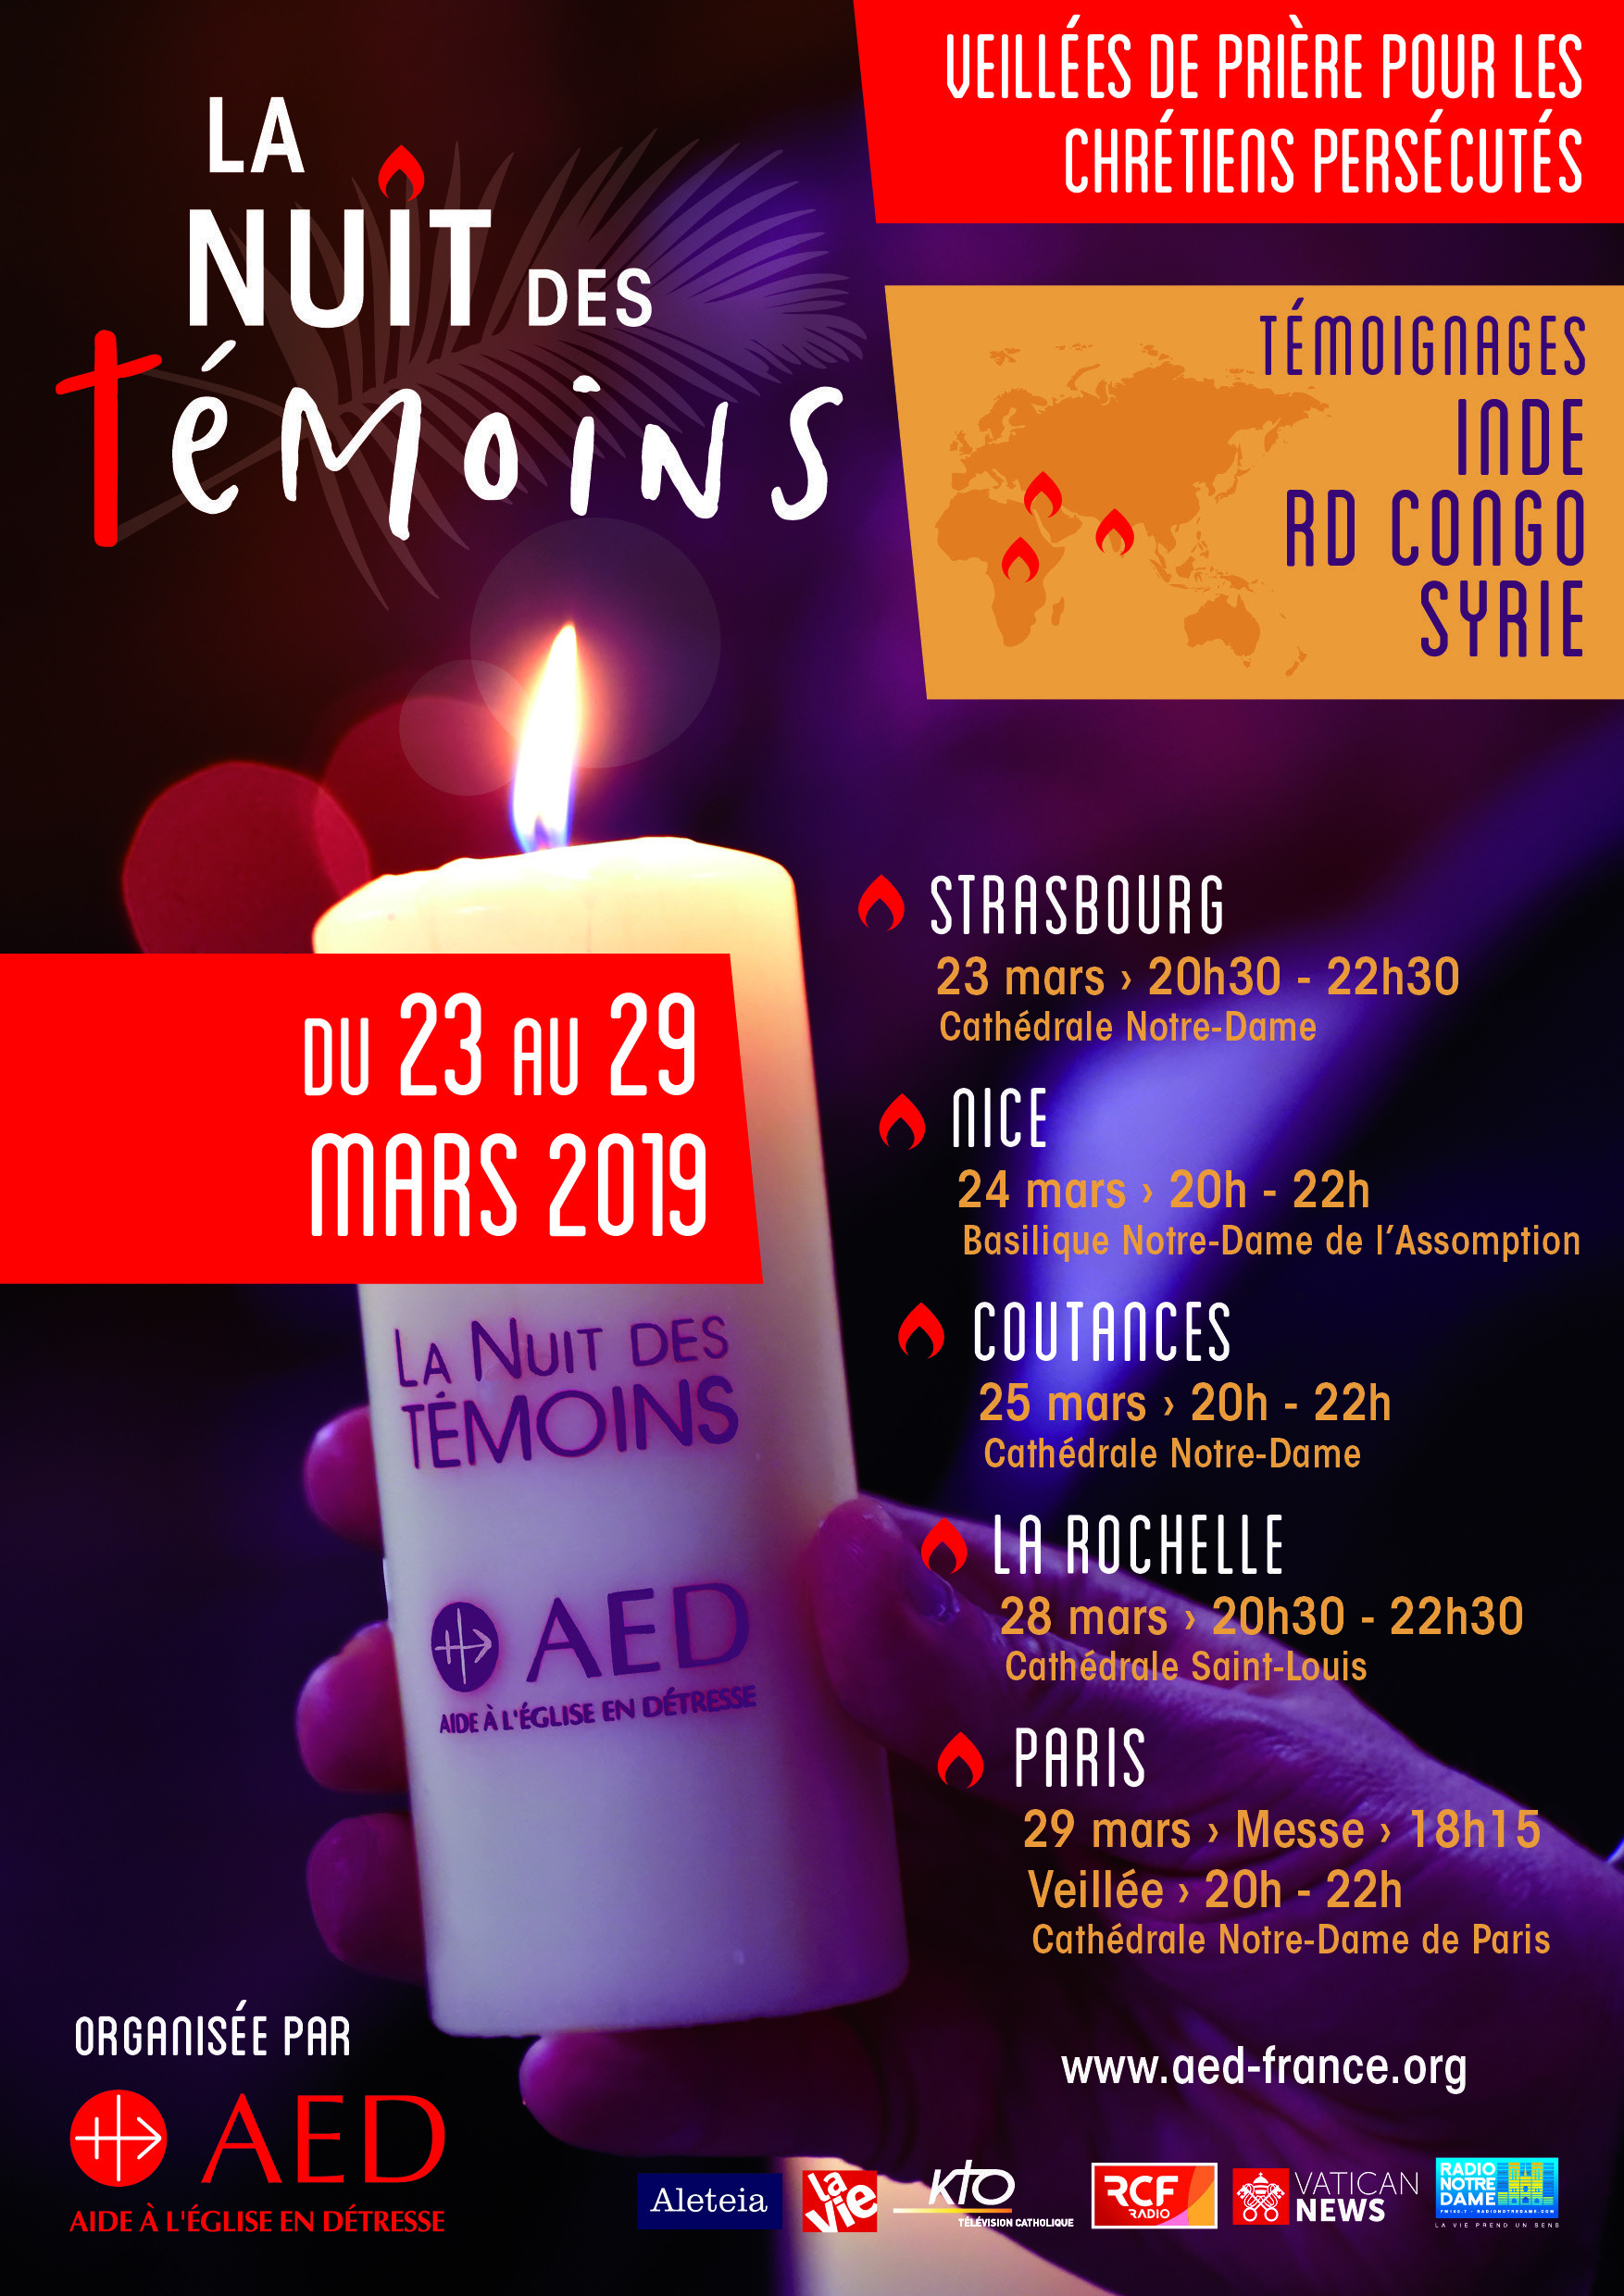 “La Nuit des Témoins” à Notre-Dame de Paris le 29 mars 2019